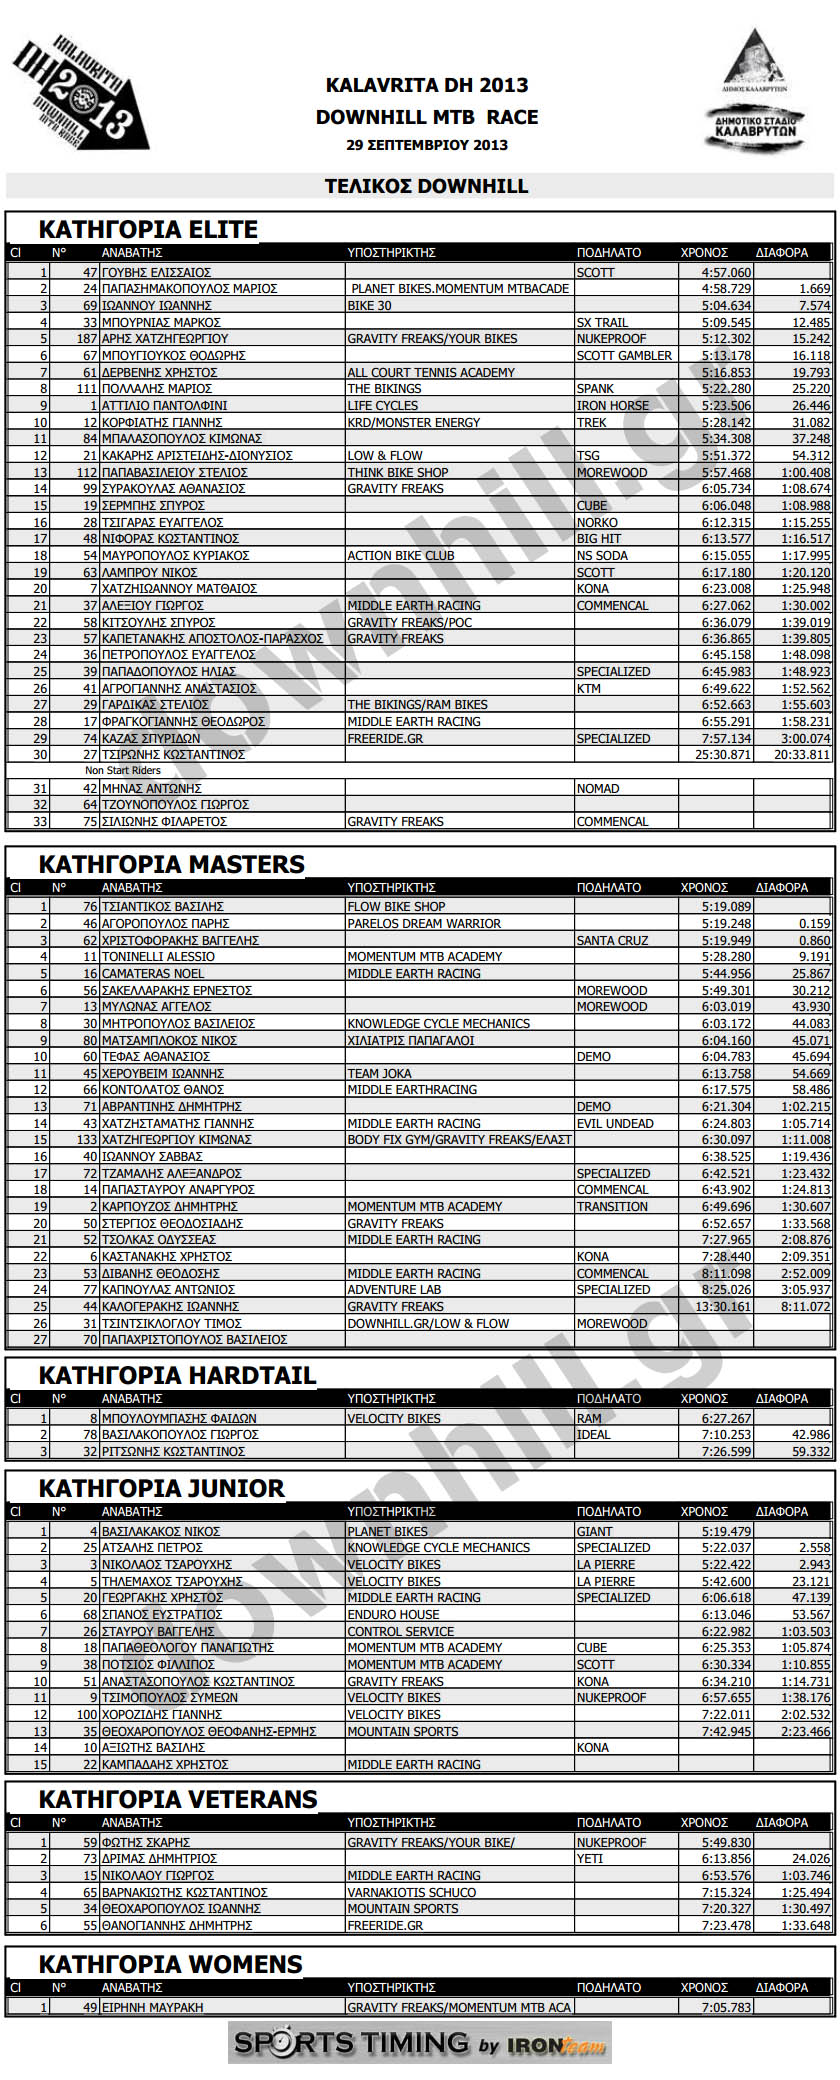 kalavrita dh 2013 final results categ